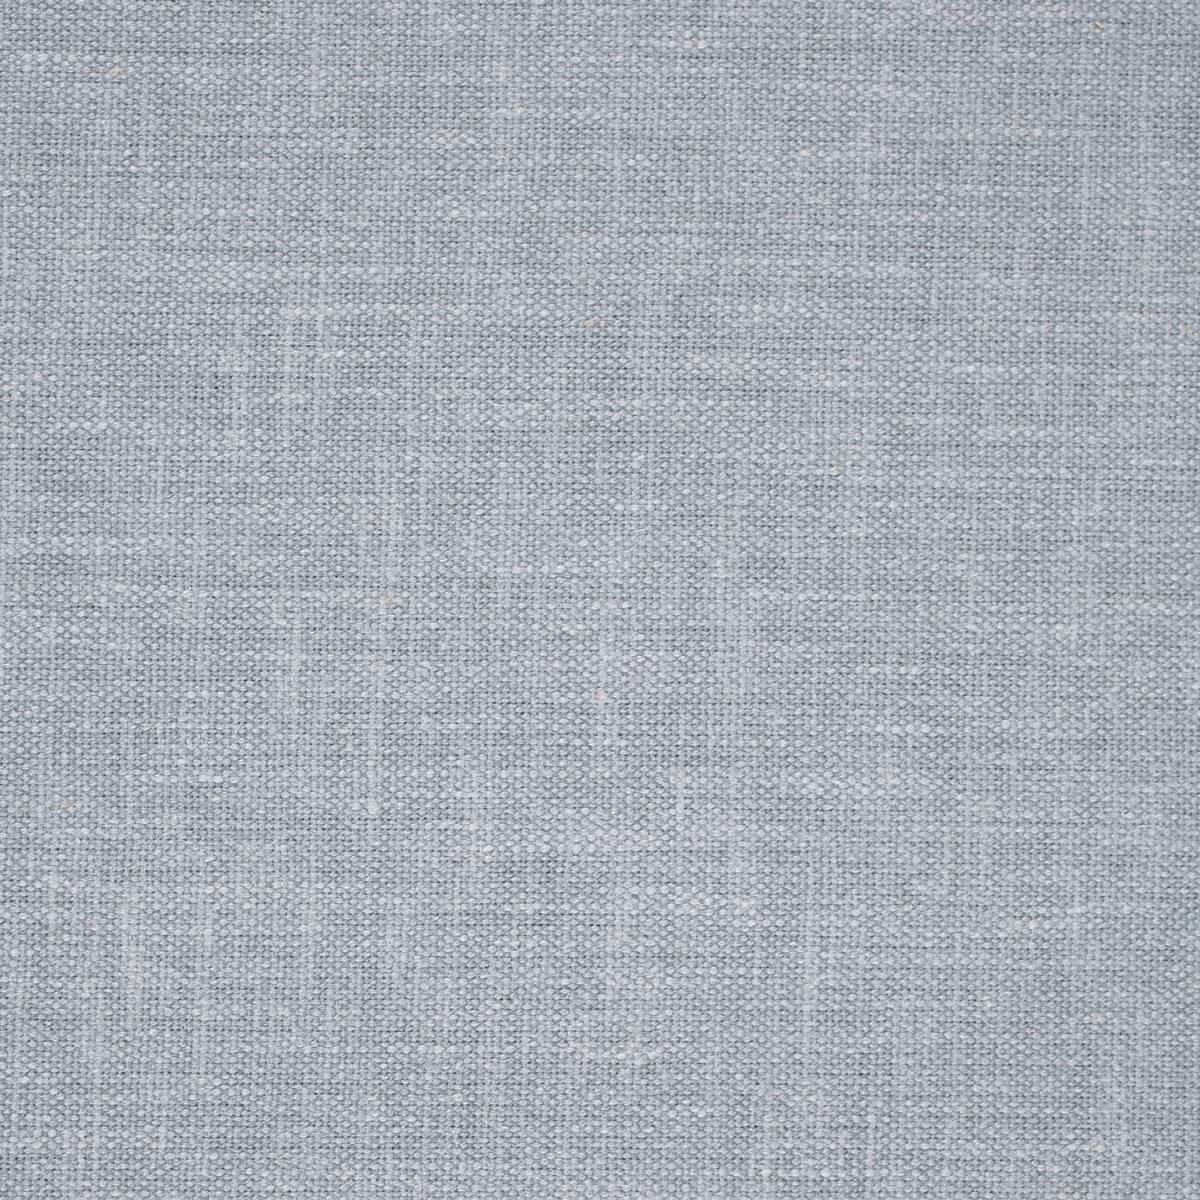 Helena Powder Blue Fabric by Sanderson